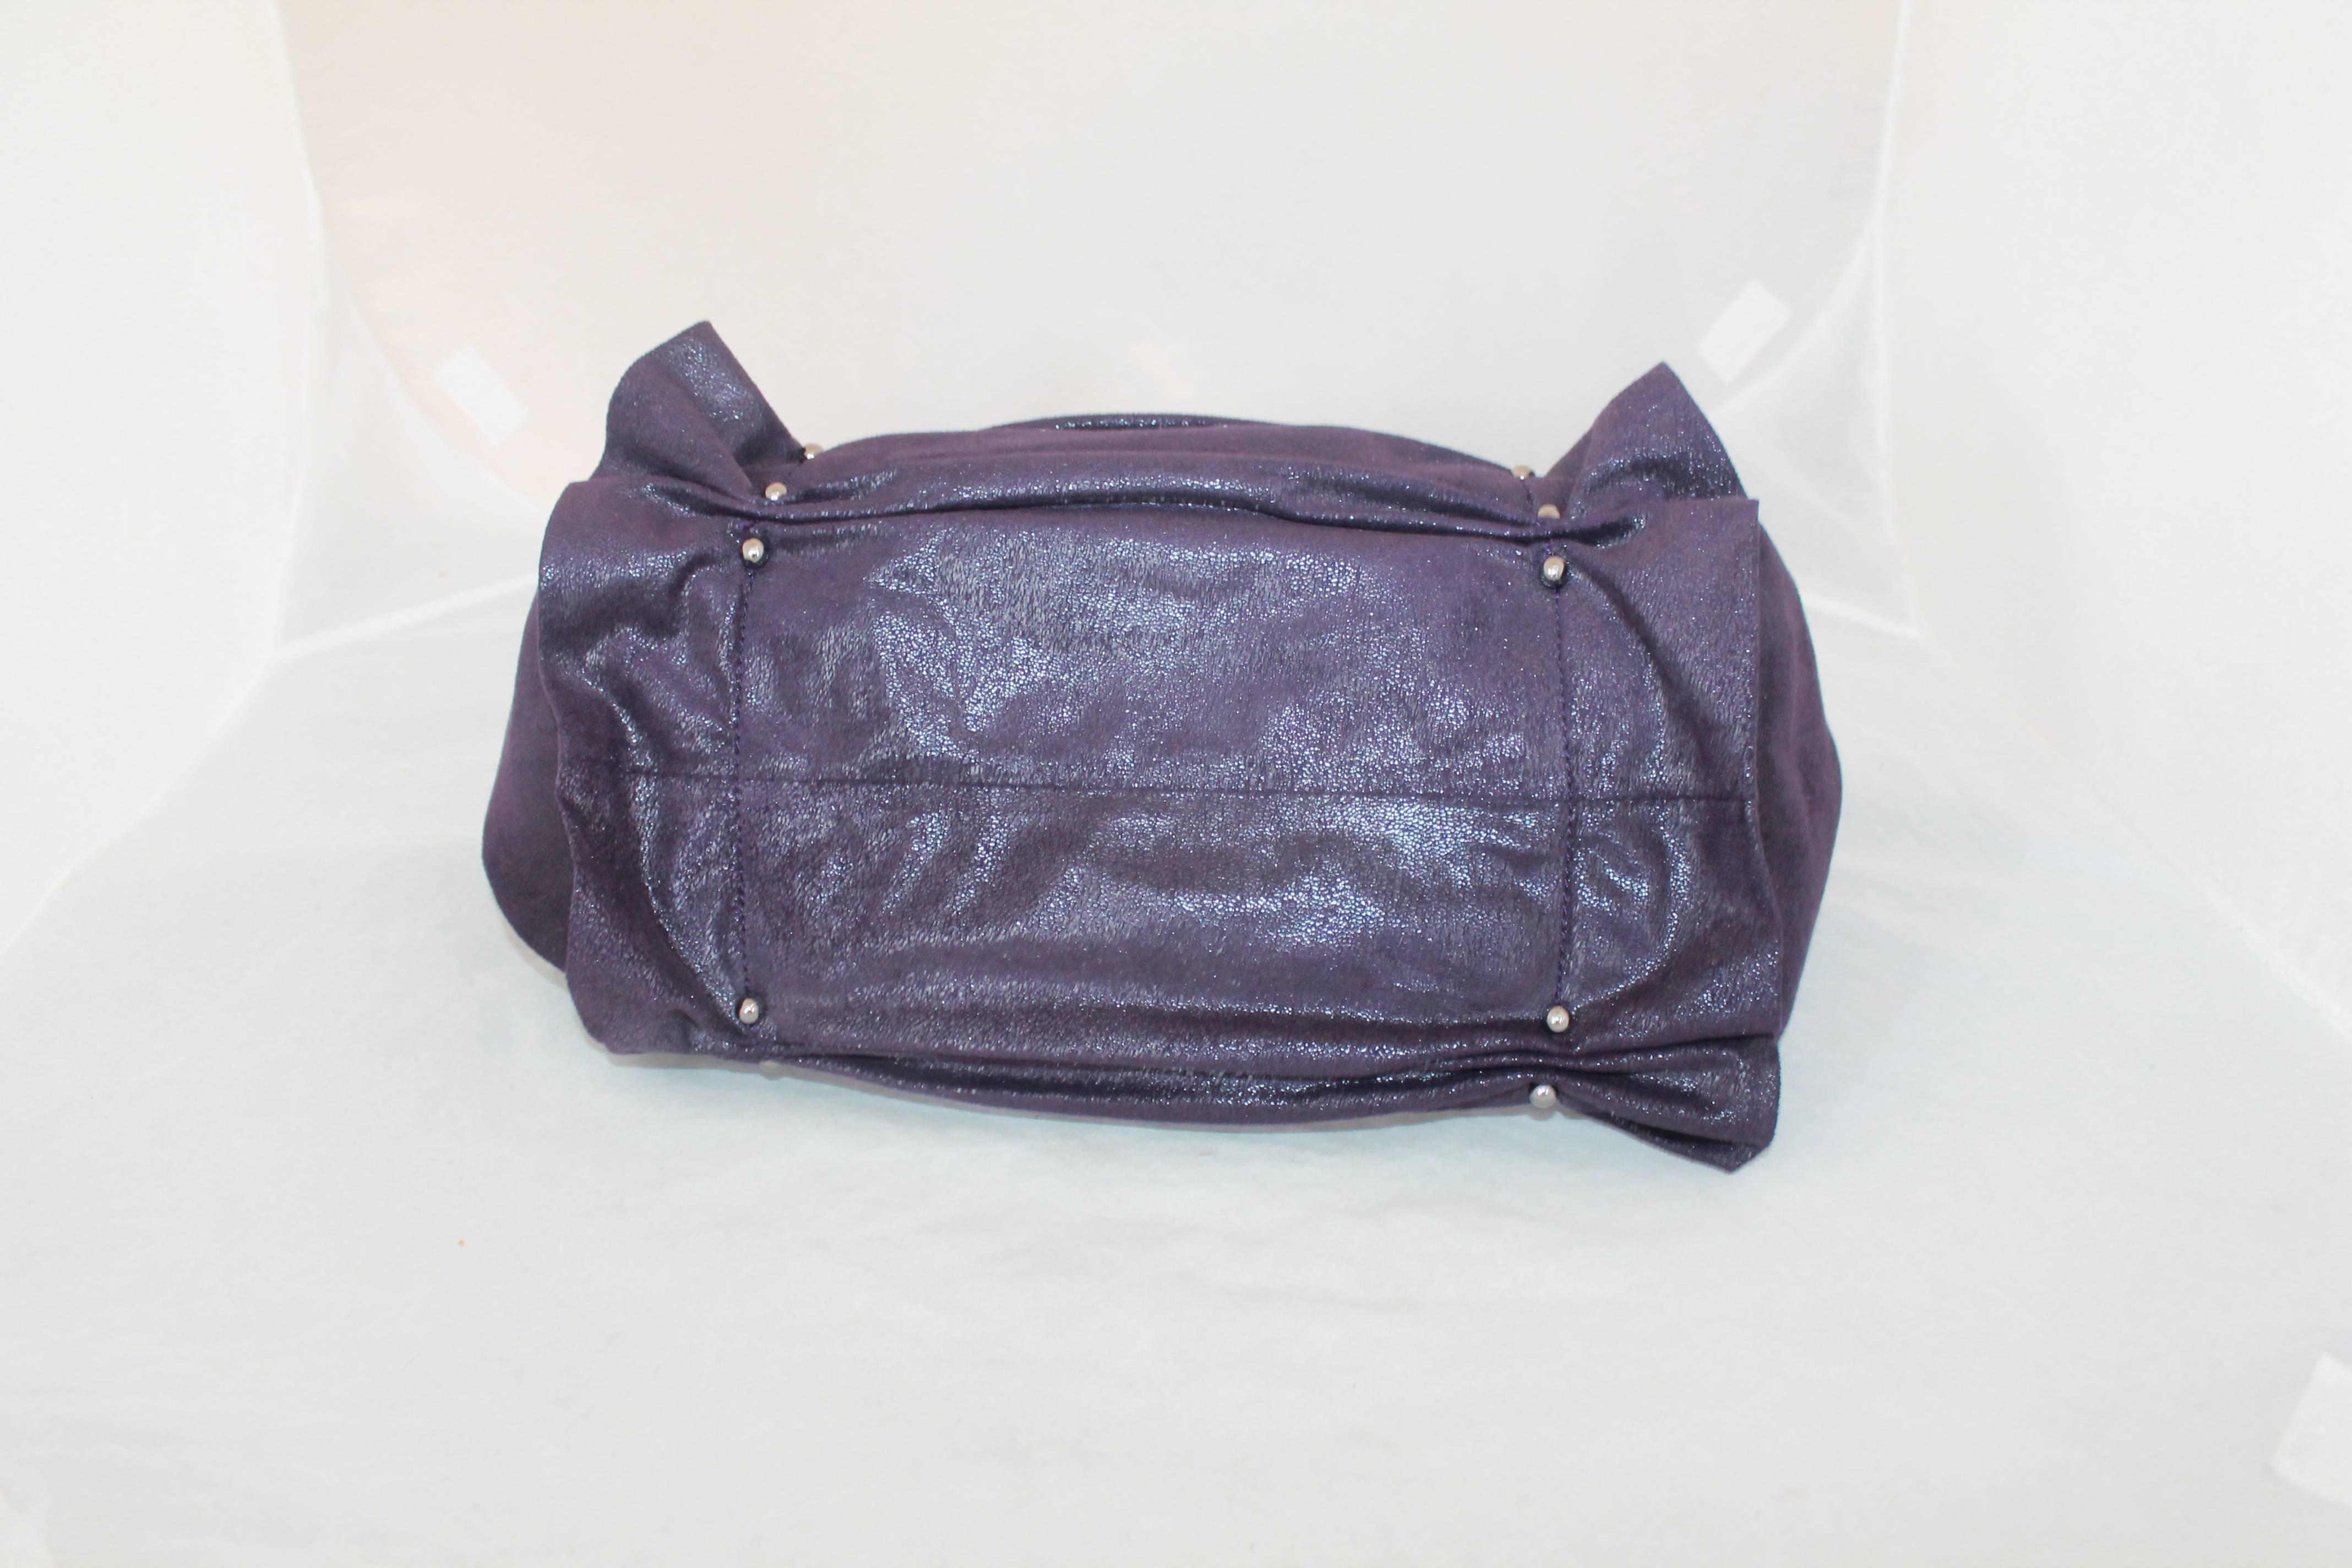 deep purple handbag